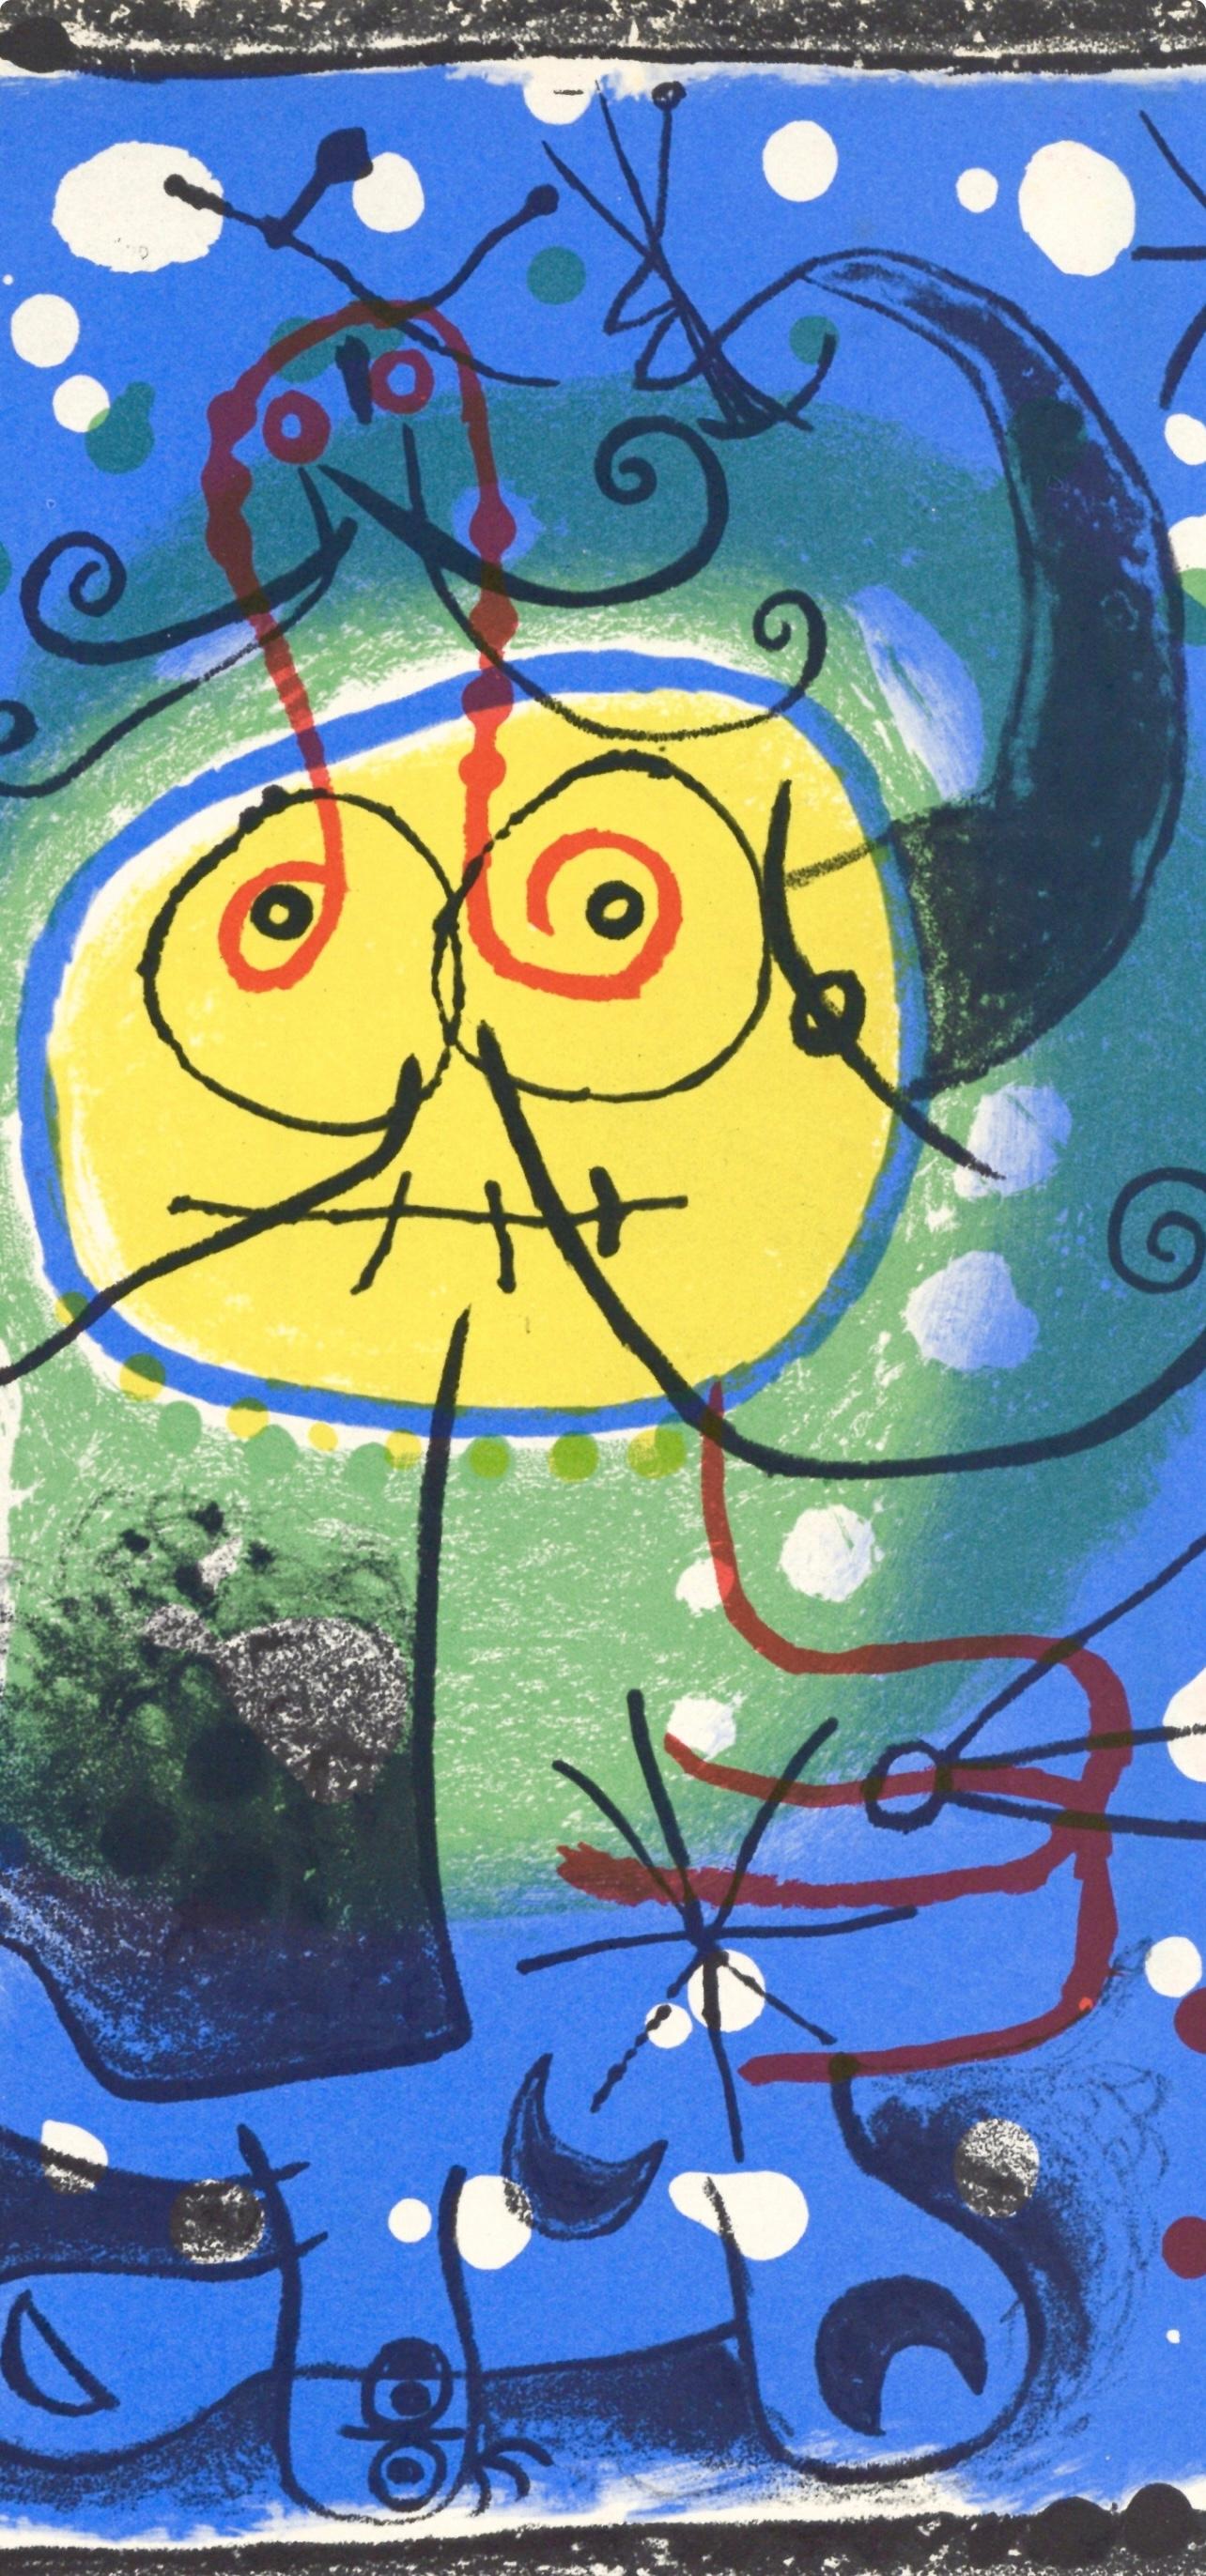 Miró, Personnage sur fond bleu, XXe Siècle (nach) – Print von Joan Miró